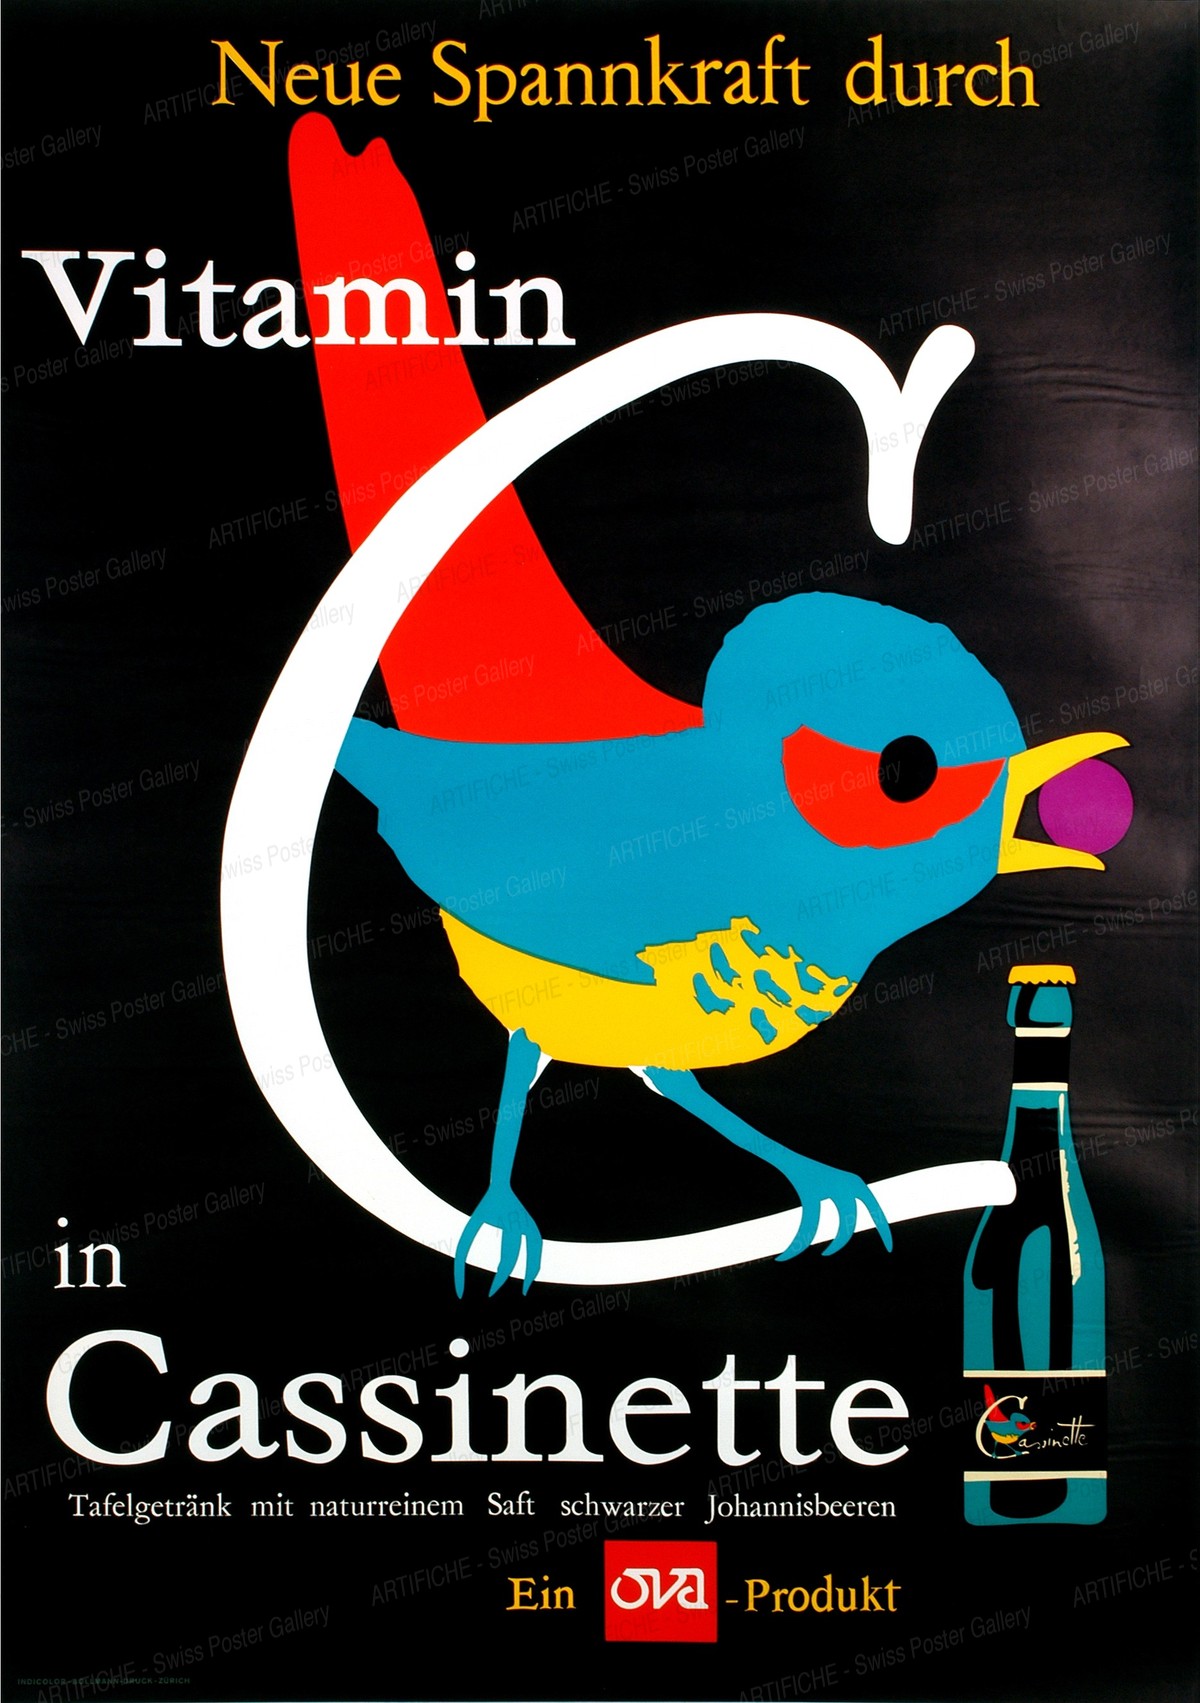 Cassinette, Rolf Gfeller